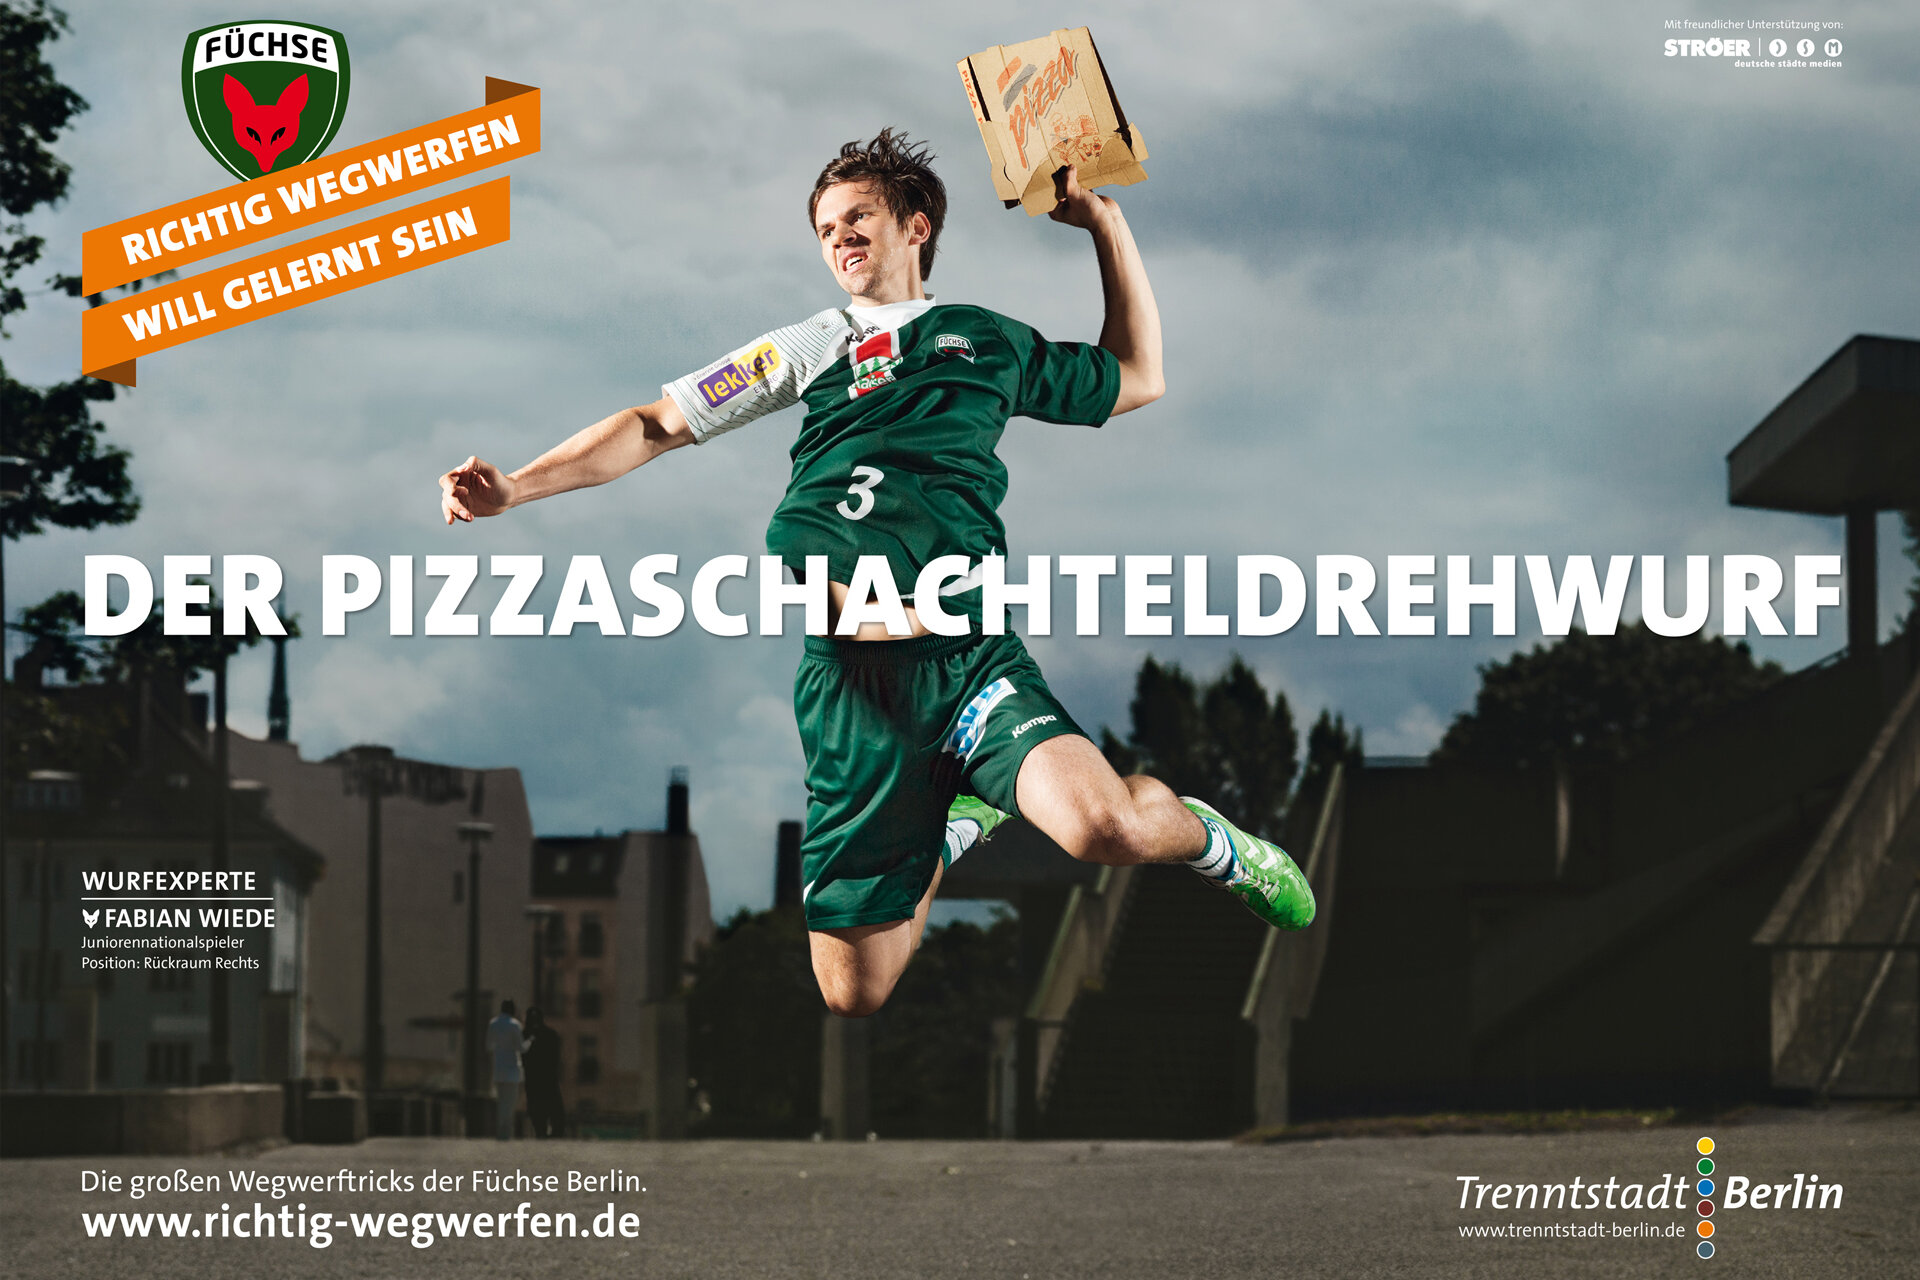 Kampagnenmotiv mit einem Spieler der Berliner Füchse, der statt einem Ball einen Pizzakarton wirdt. Überschrift:  Der Pizzaschachtedrehwurf 